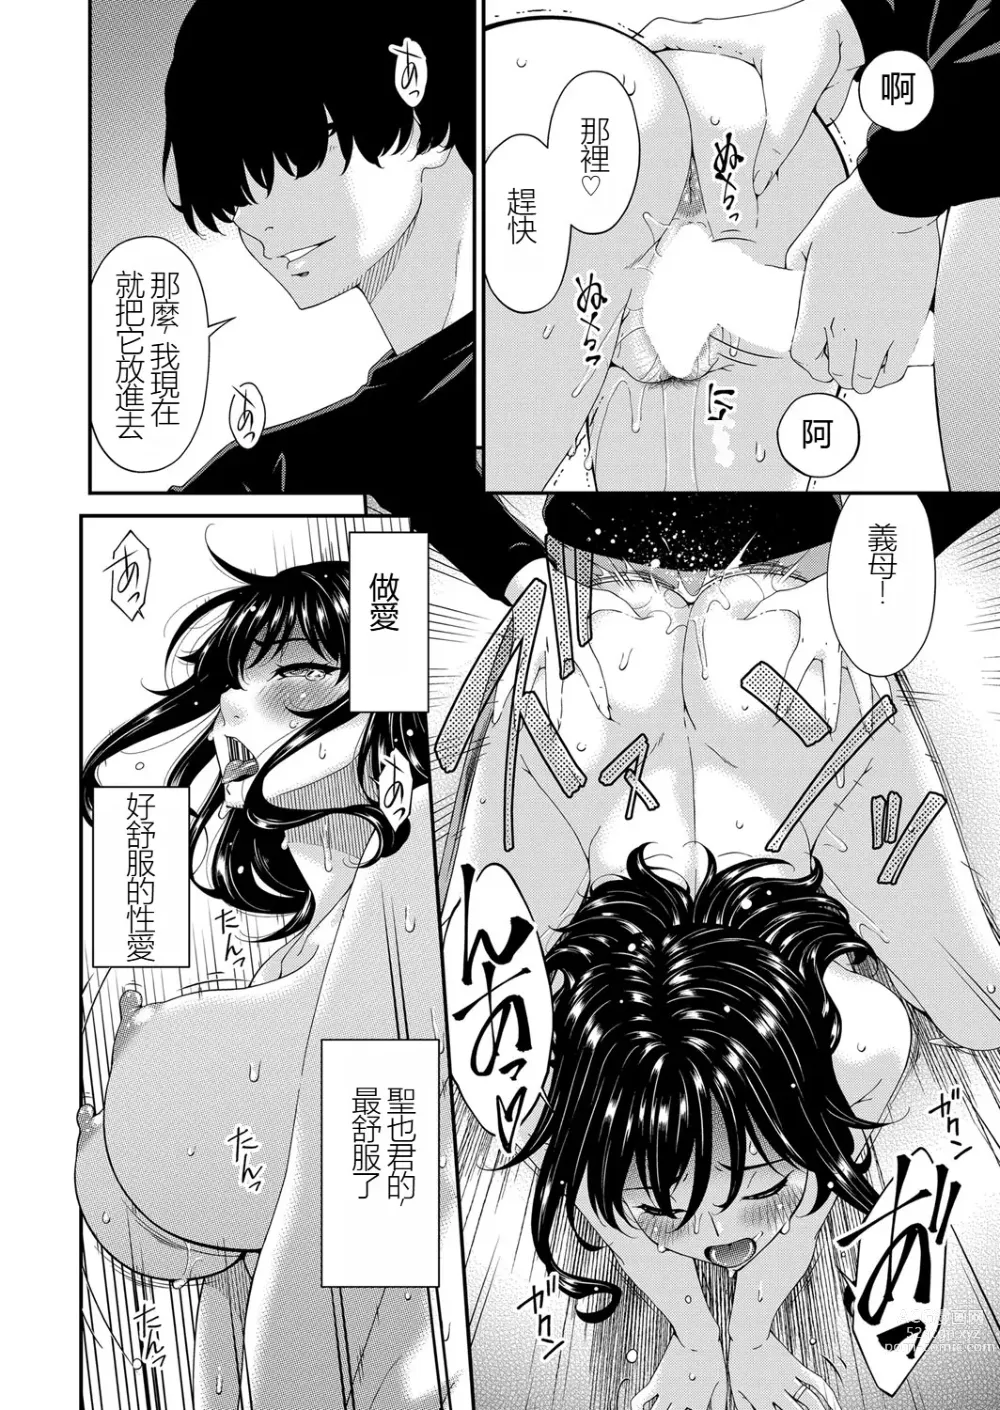 Page 2 of manga Saiin Kazoku Completed